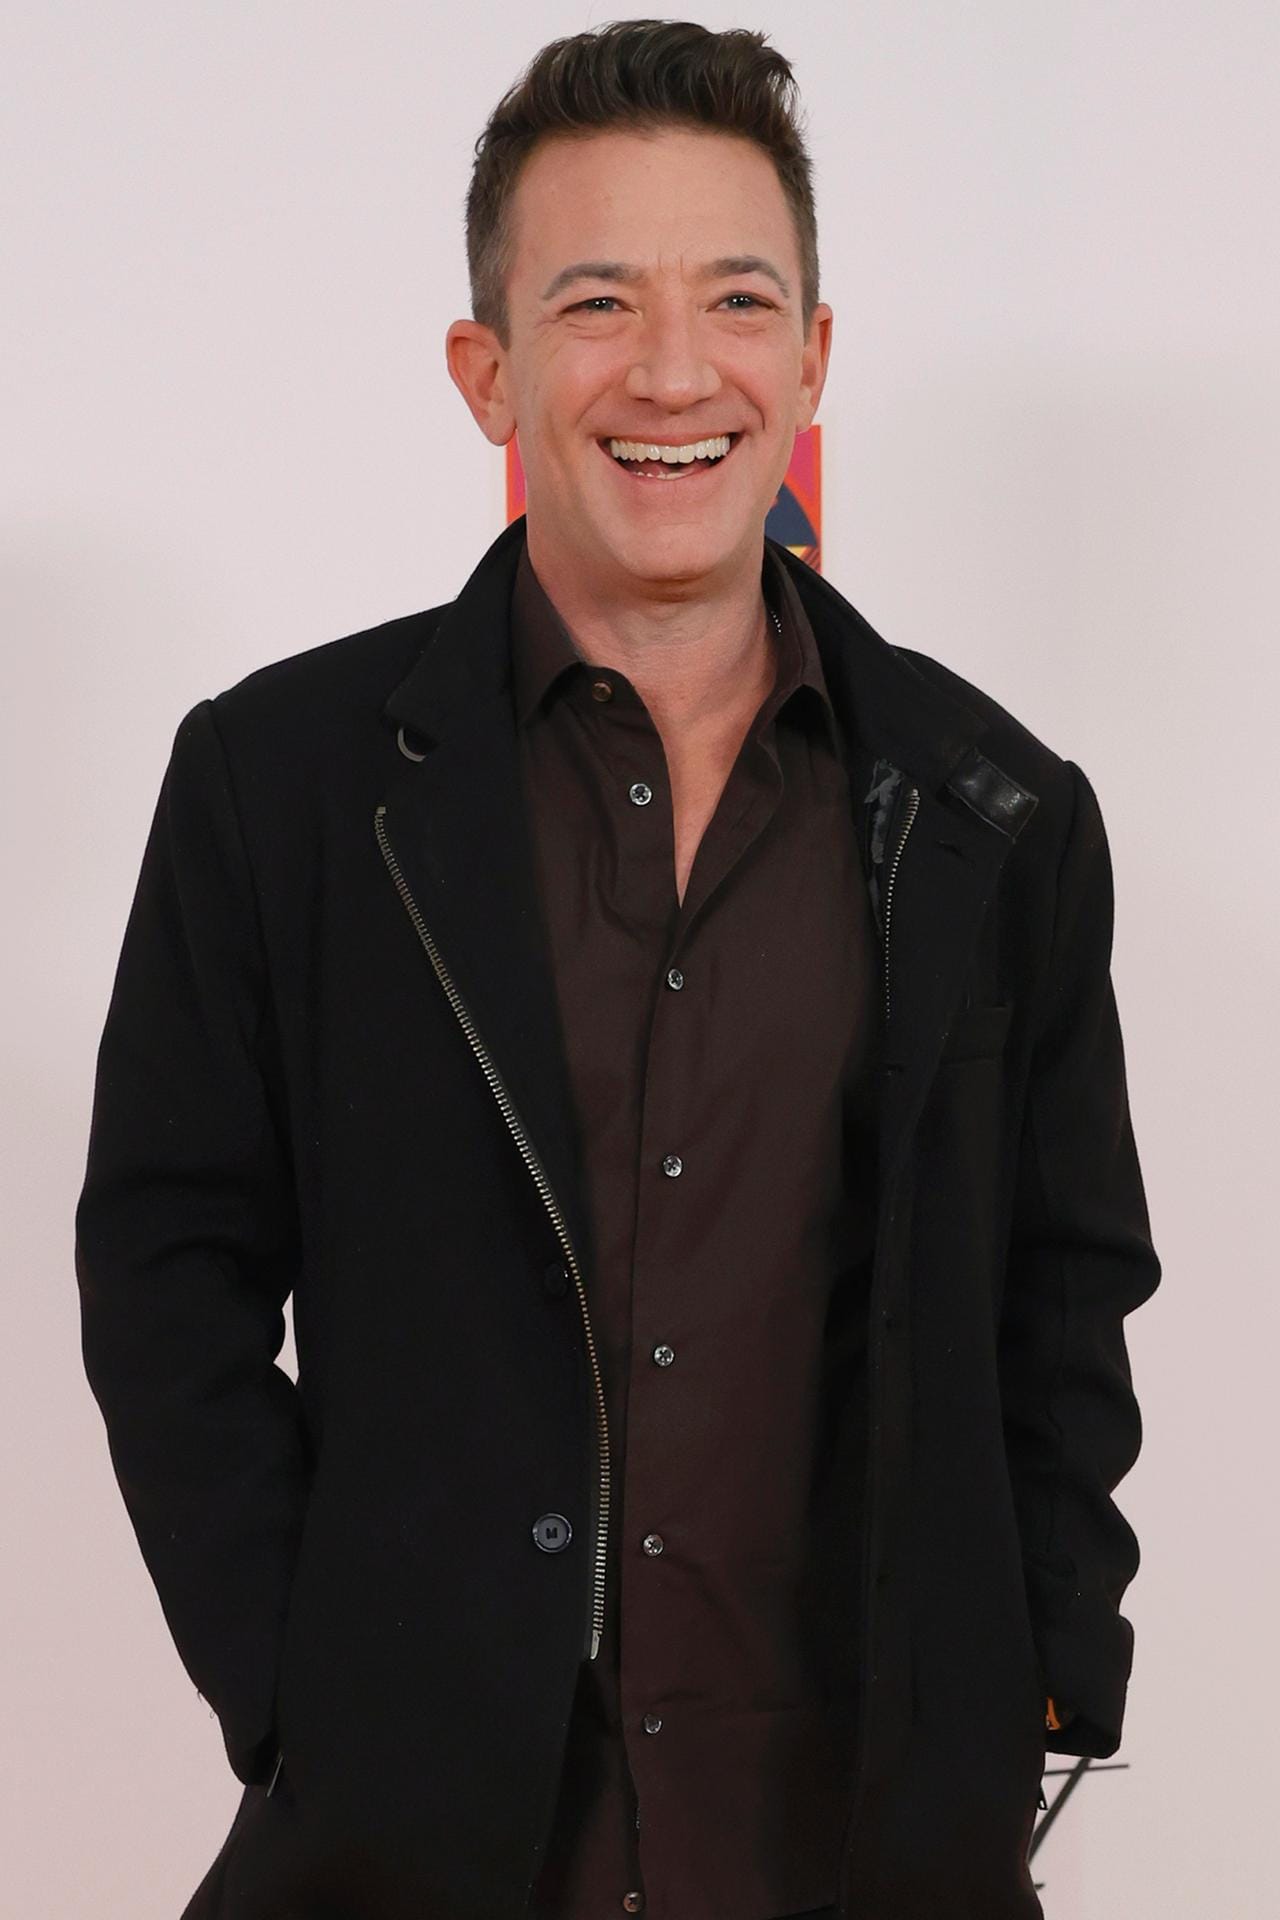 David Faustino: Nachdem die Rolle den Schauspieler bekannt gemacht hatte, hatte er mehrere Gastauftritte in weiteren Serien wie "Akte X". Die große Karriere blieb dann jedoch aus.